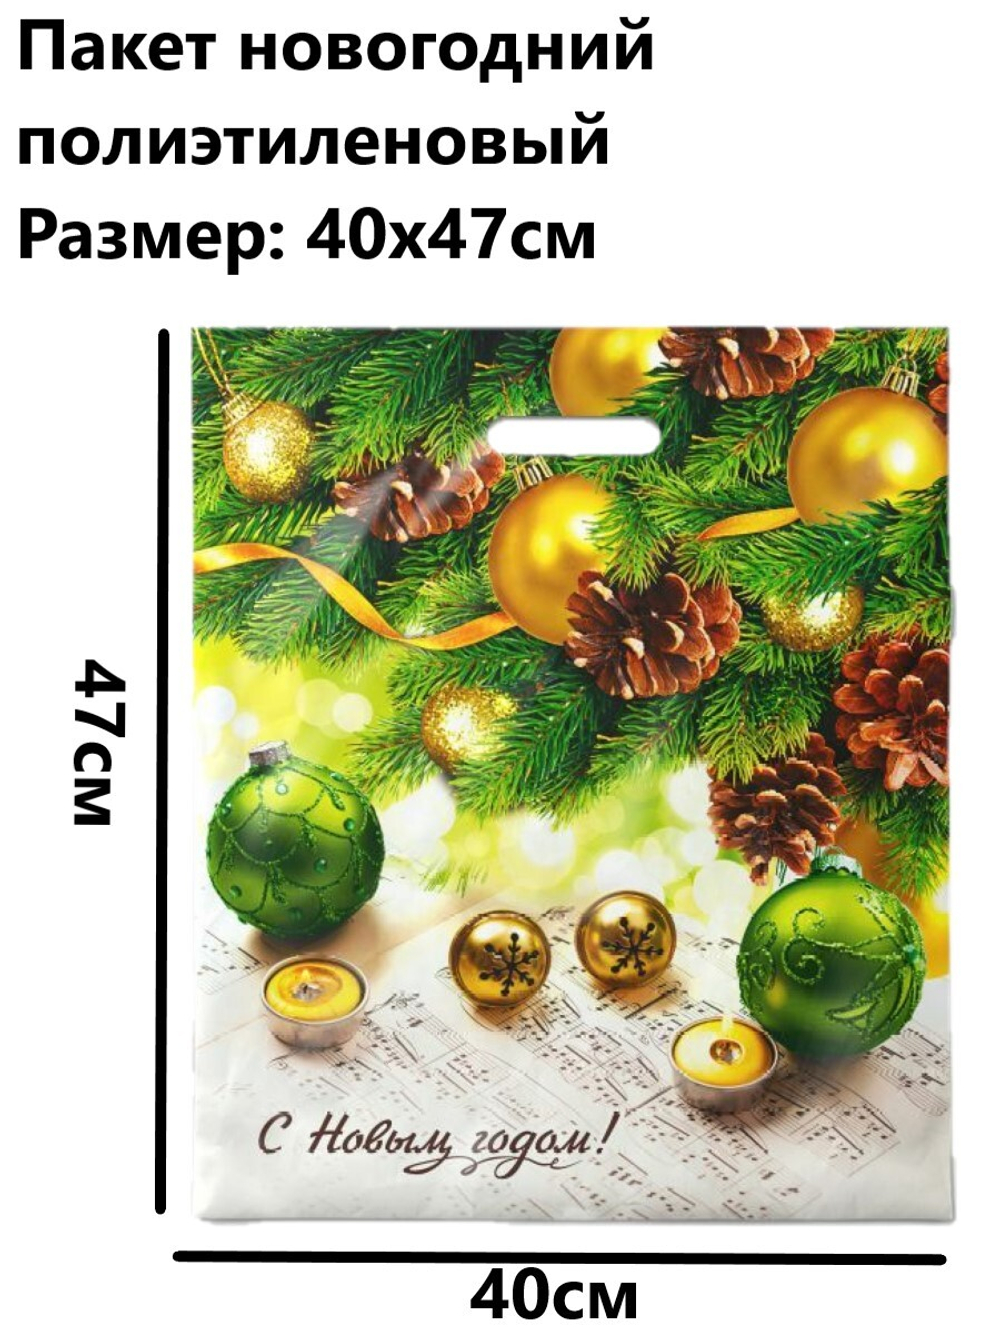 Пакет новогодний подарочный полиэтиленовый "Новогодняя увертюра", 40*47см